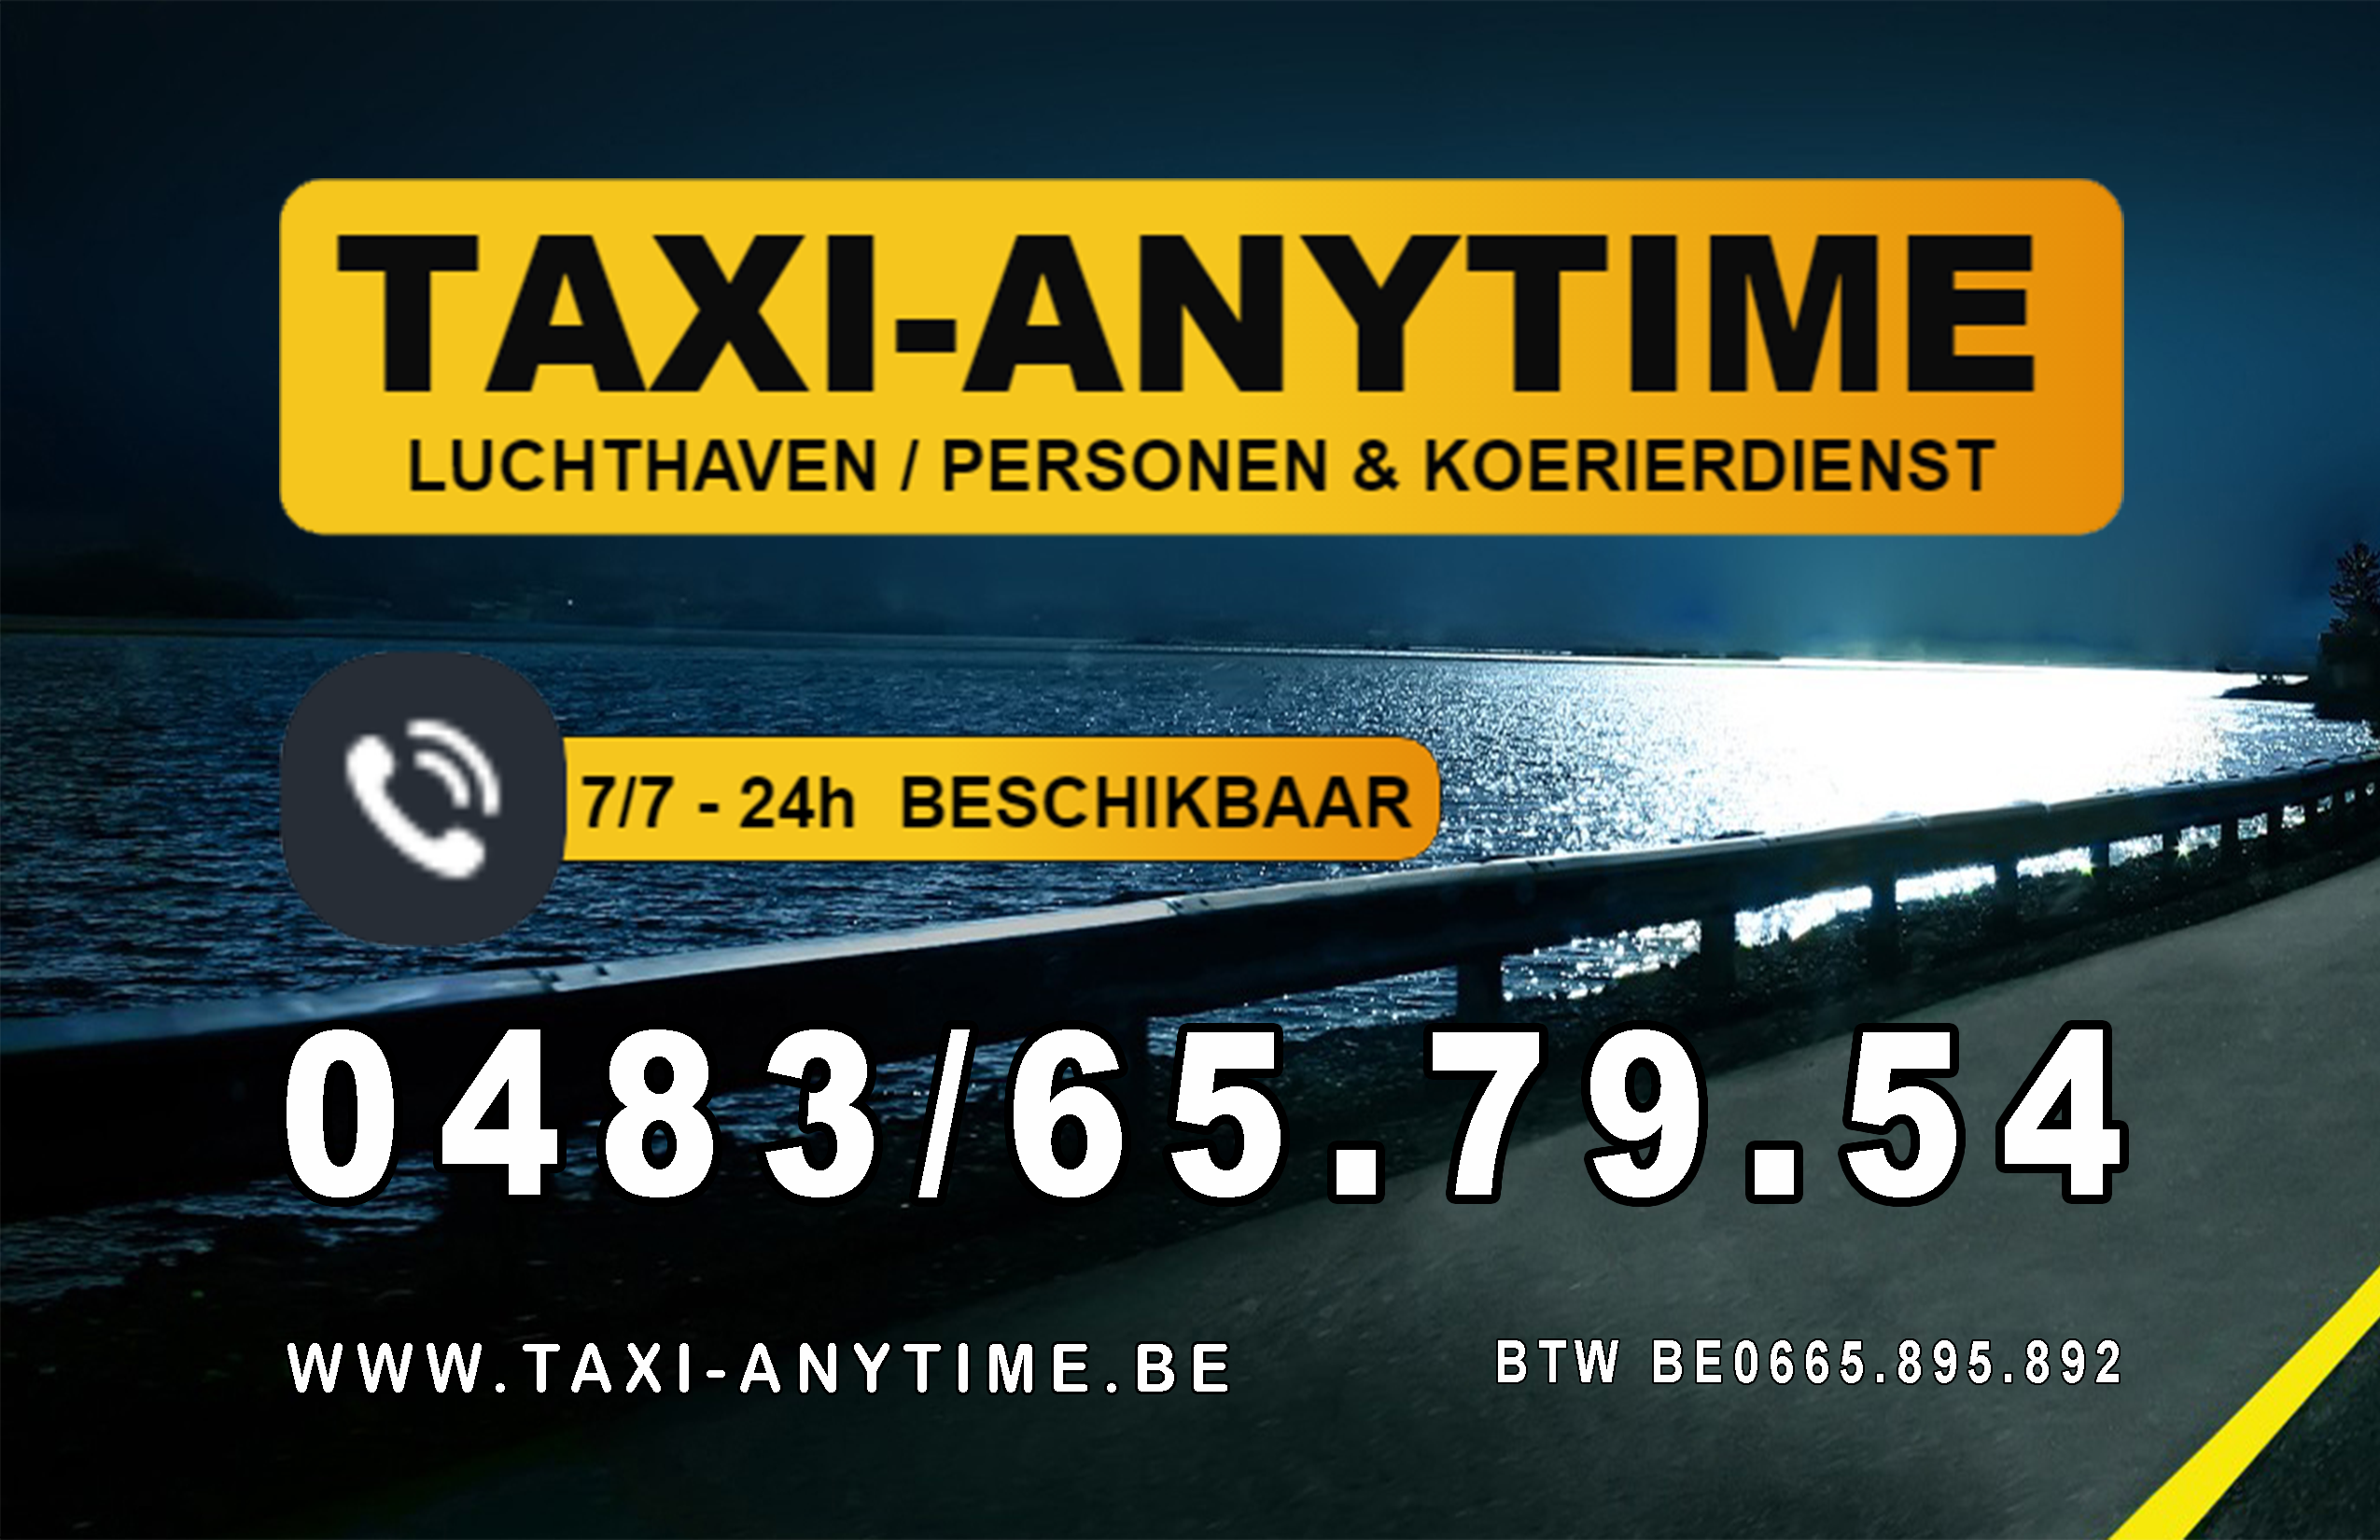 taxibedrijven met luchthavenvervoer Beveren-Waas Taxi-anytime